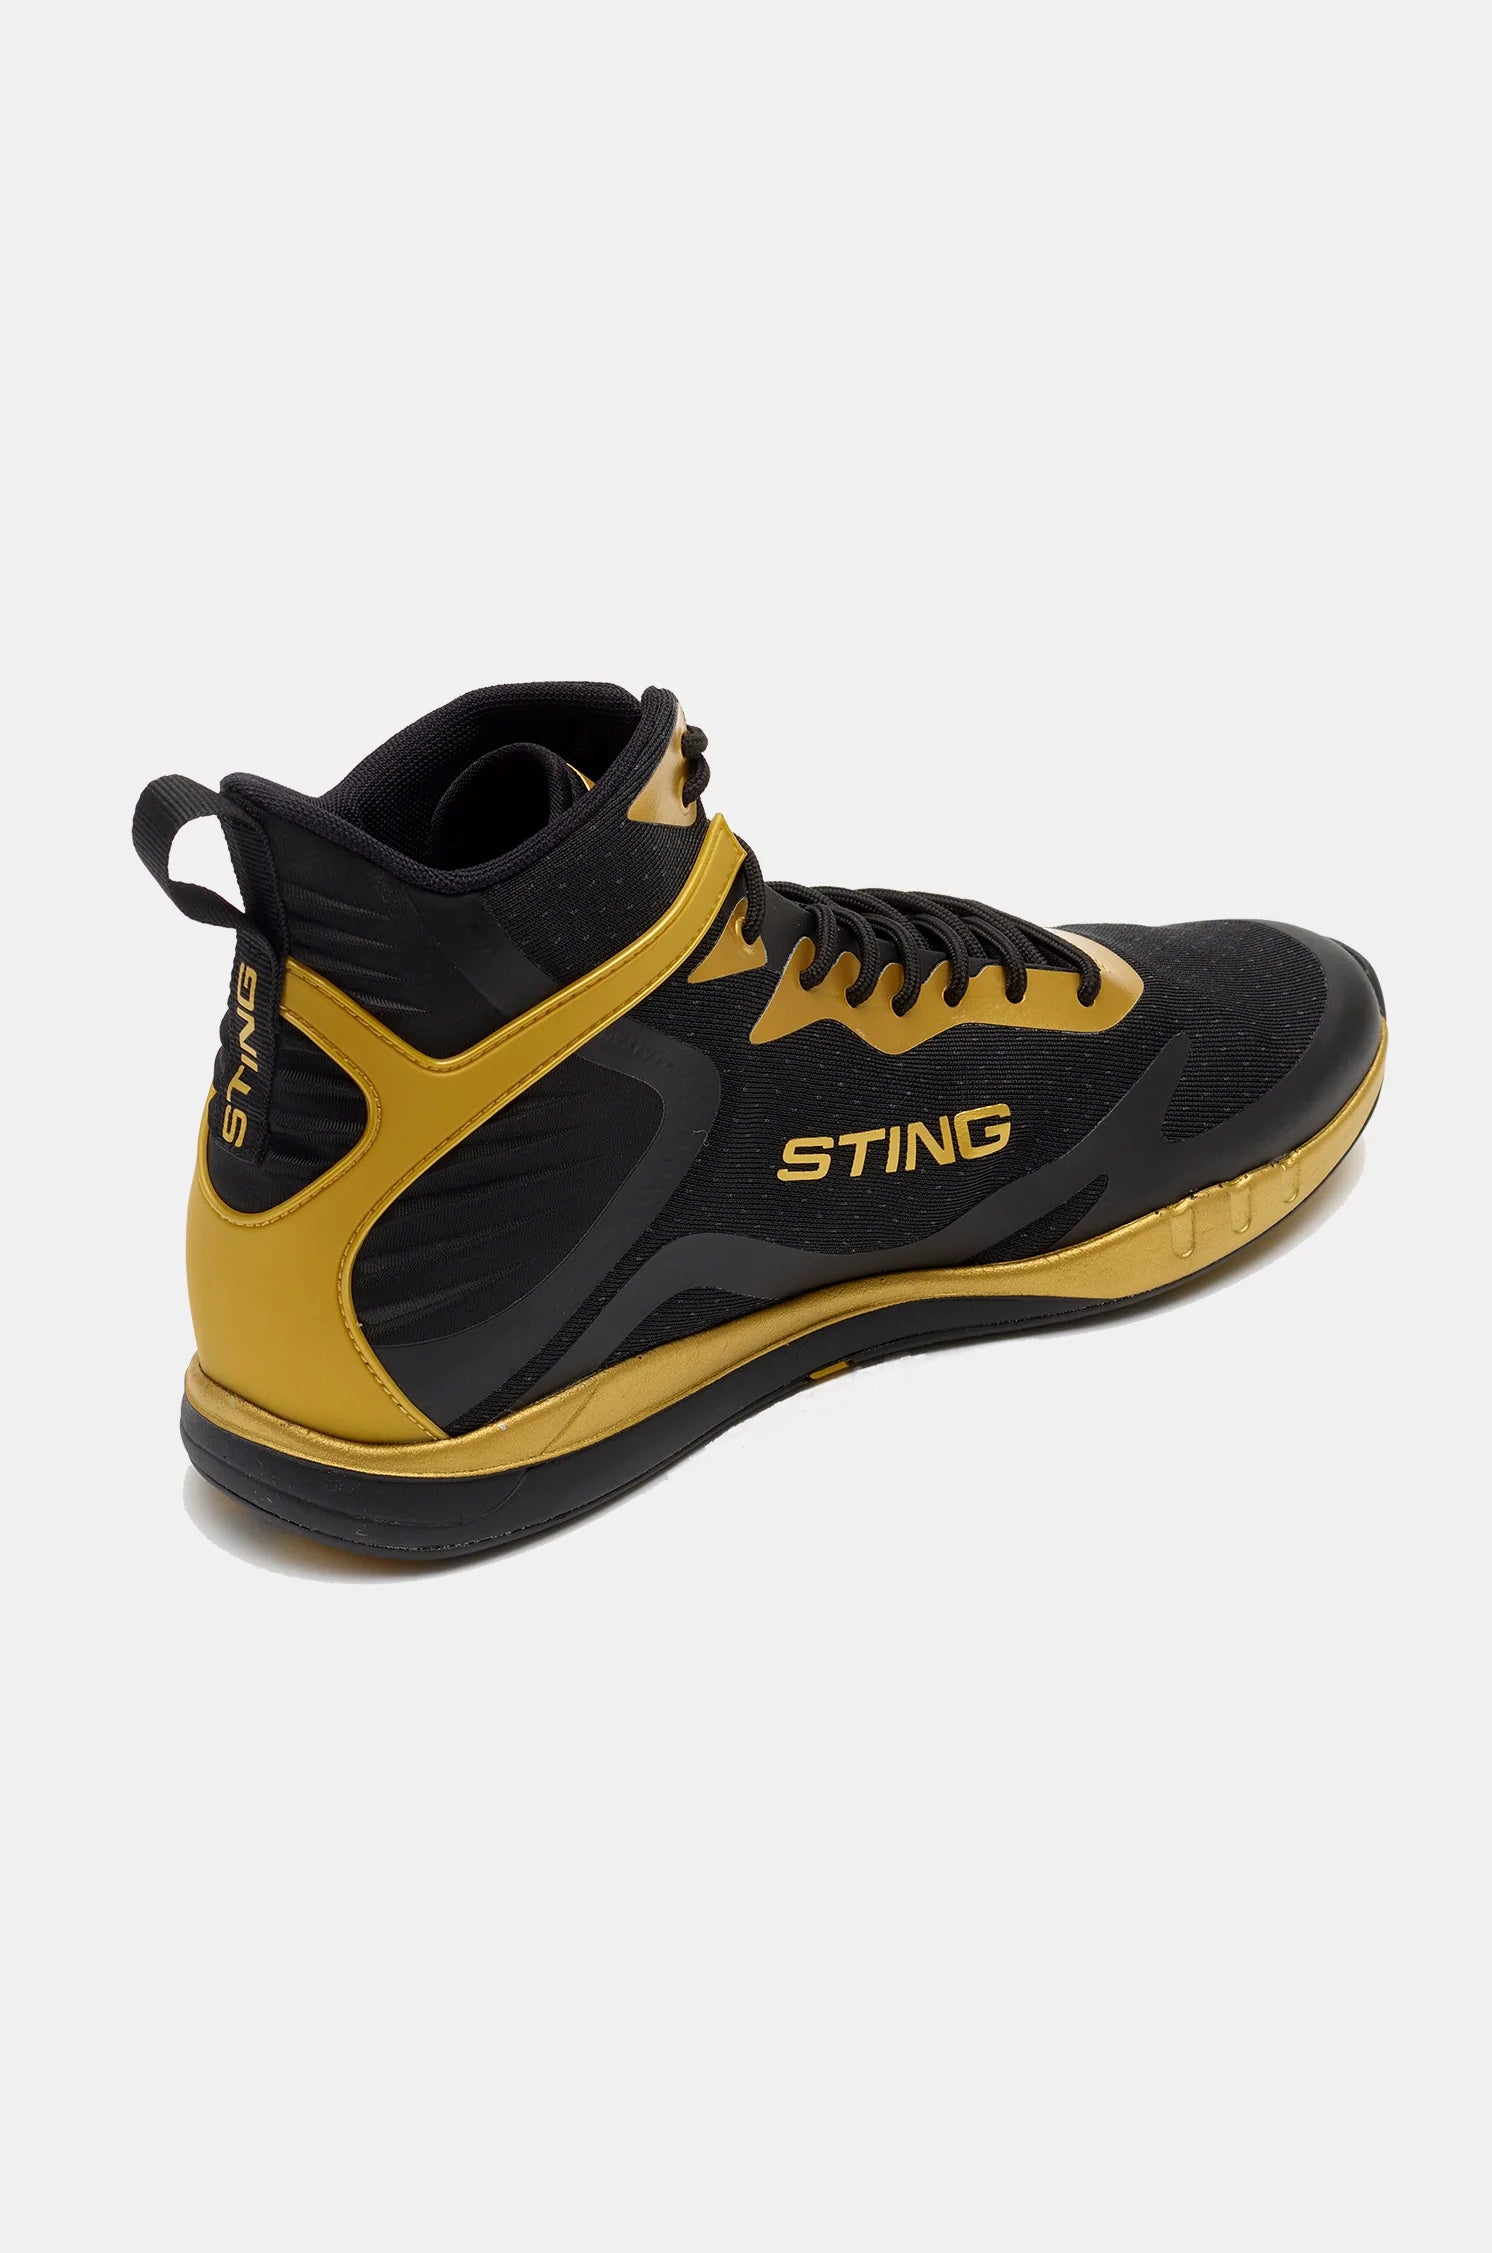 STING Viper Boxing Shoes Gold Black